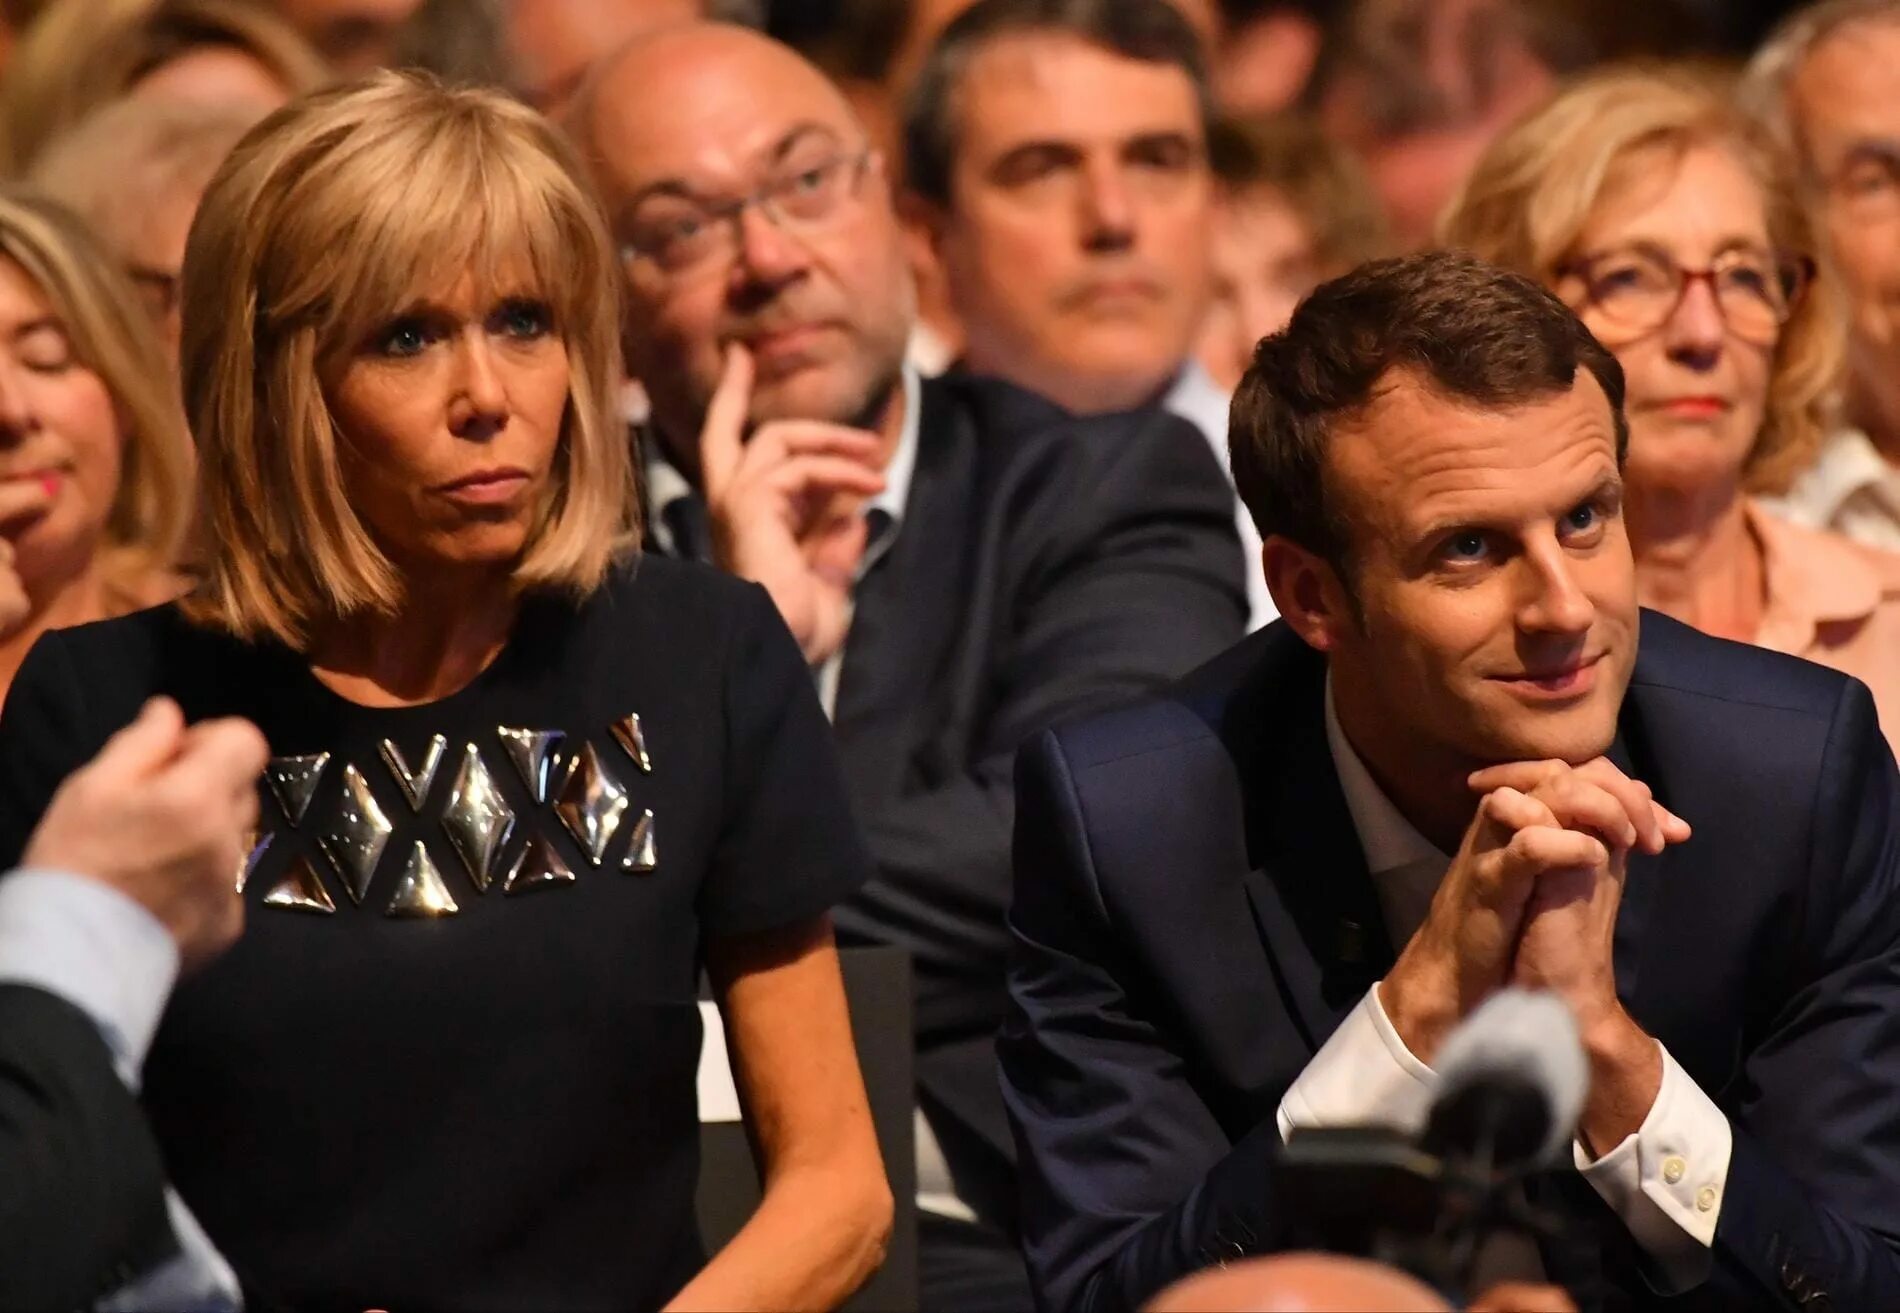 Жена макрона возраст фото. Жена президента Франции Макрона. Макрон Эммануэль с женой. Возраст жены Макрона президента Франции. Бриджит Макрон и Эммануэль Макрон разница в возрасте.